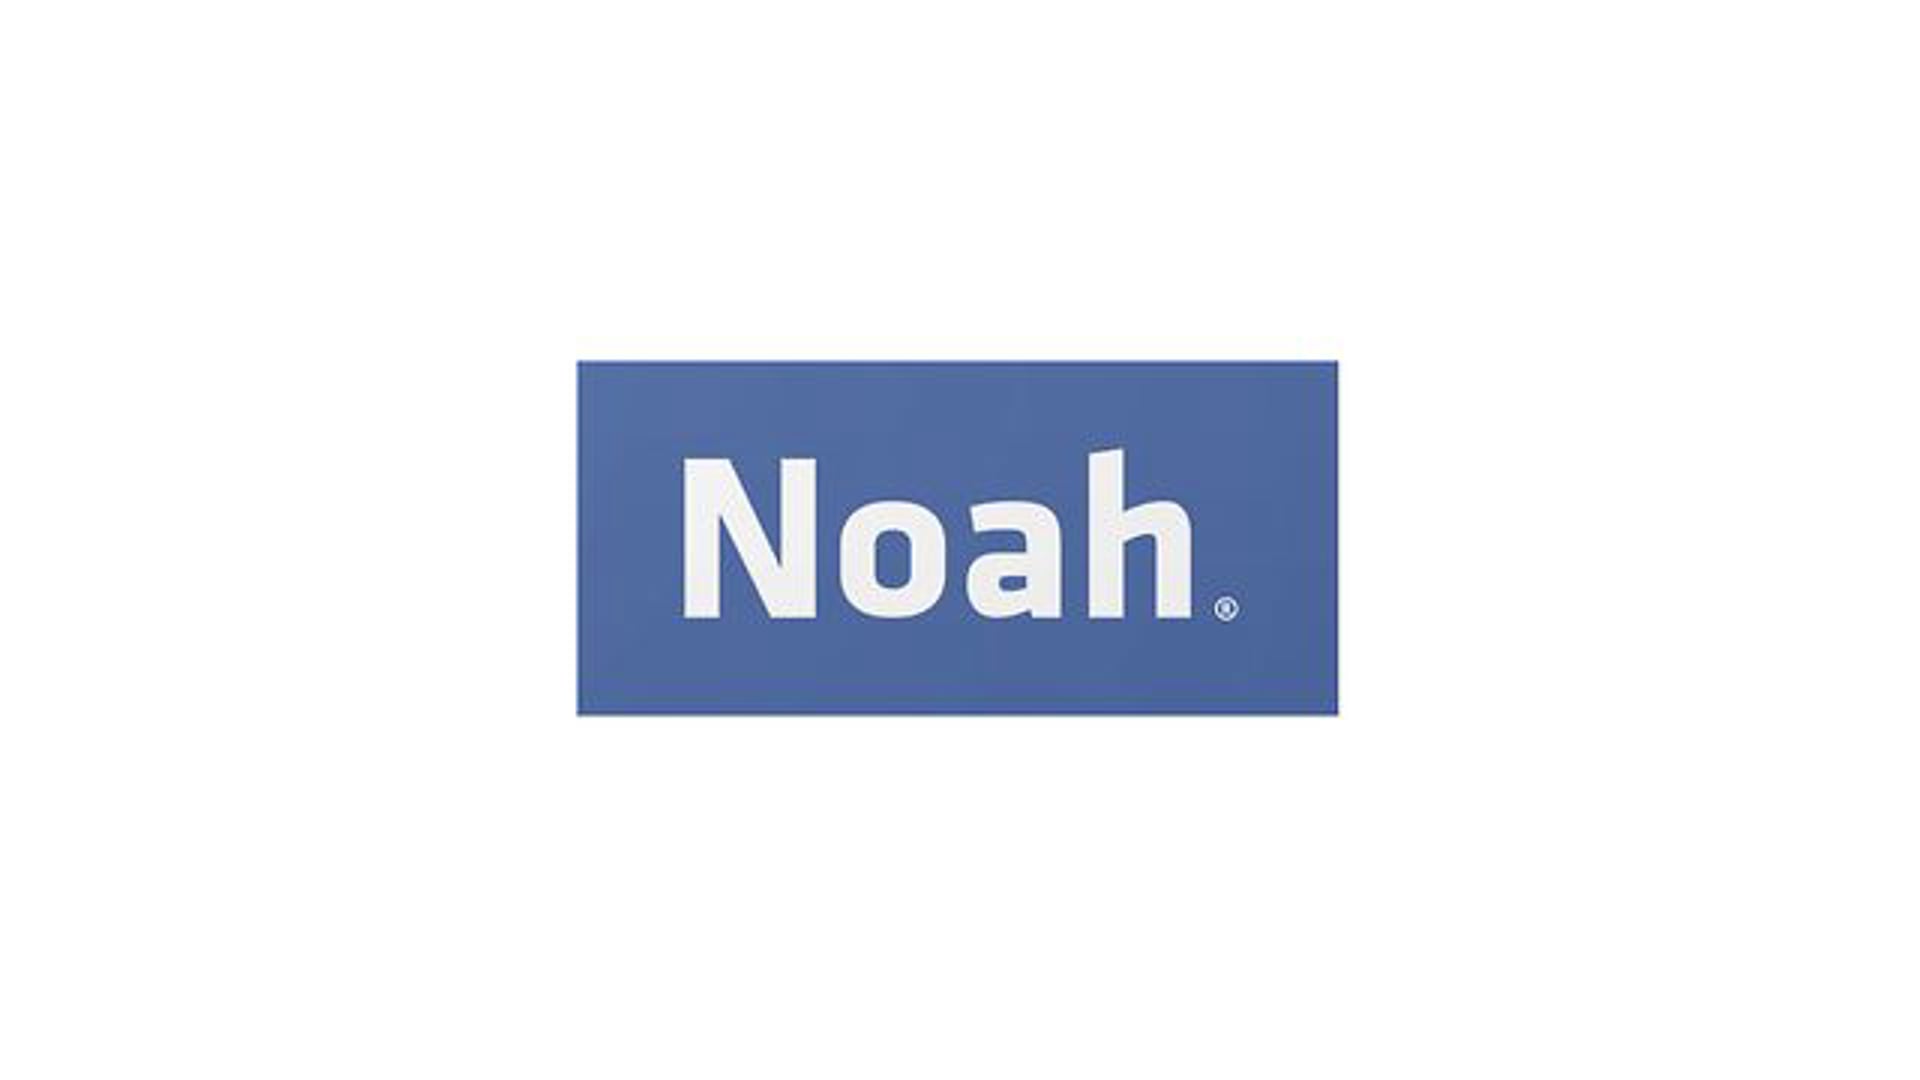 1. Noah